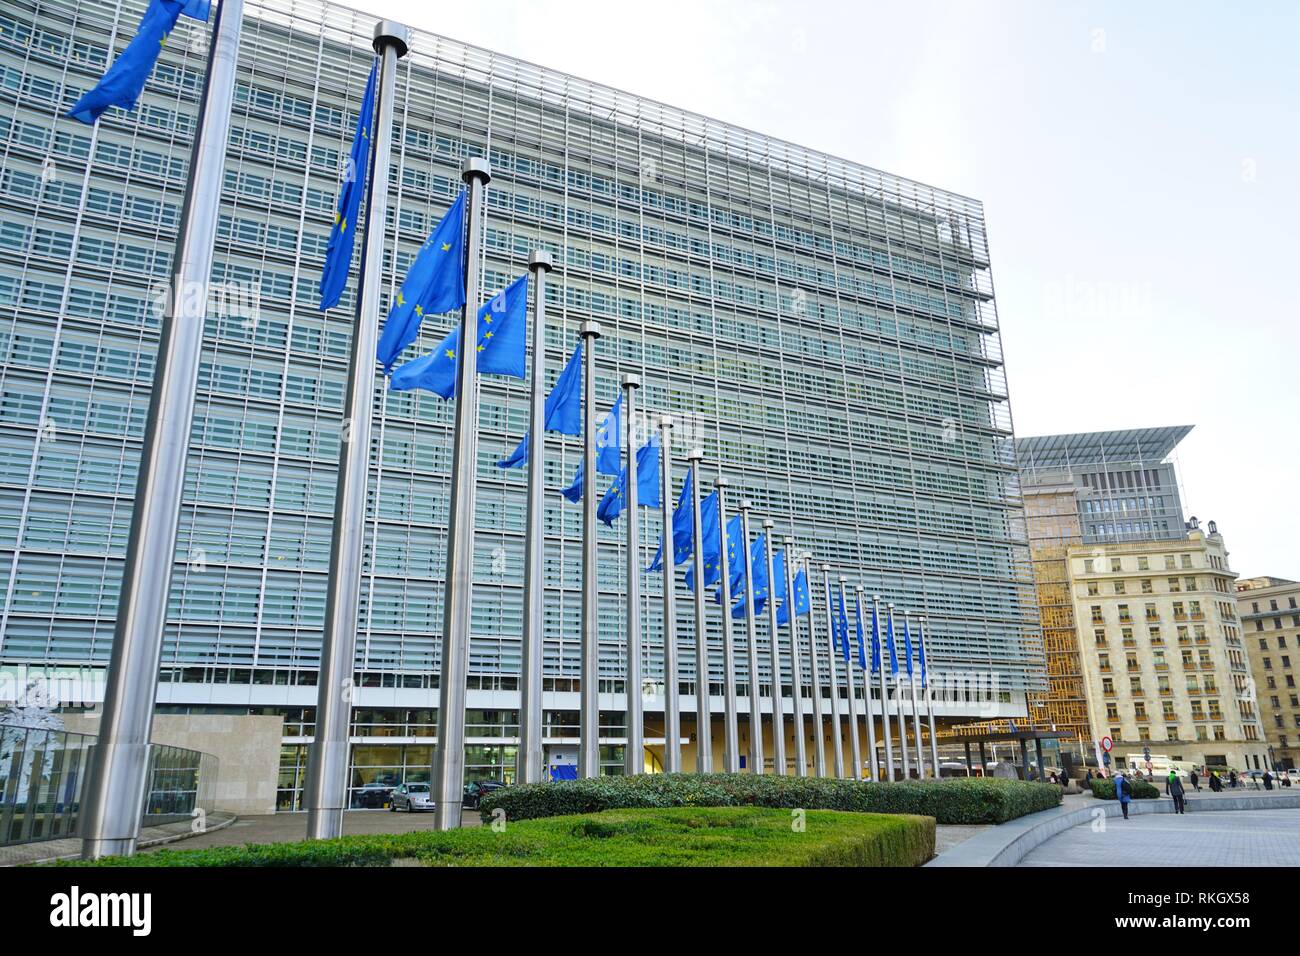 Bruxelles, BELGIQUE - une vue sur le bâtiment du Berlaymont, siège de la Commission européenne de l'Union européenne (UE) basé à Bruxelles, Belgique. Banque D'Images